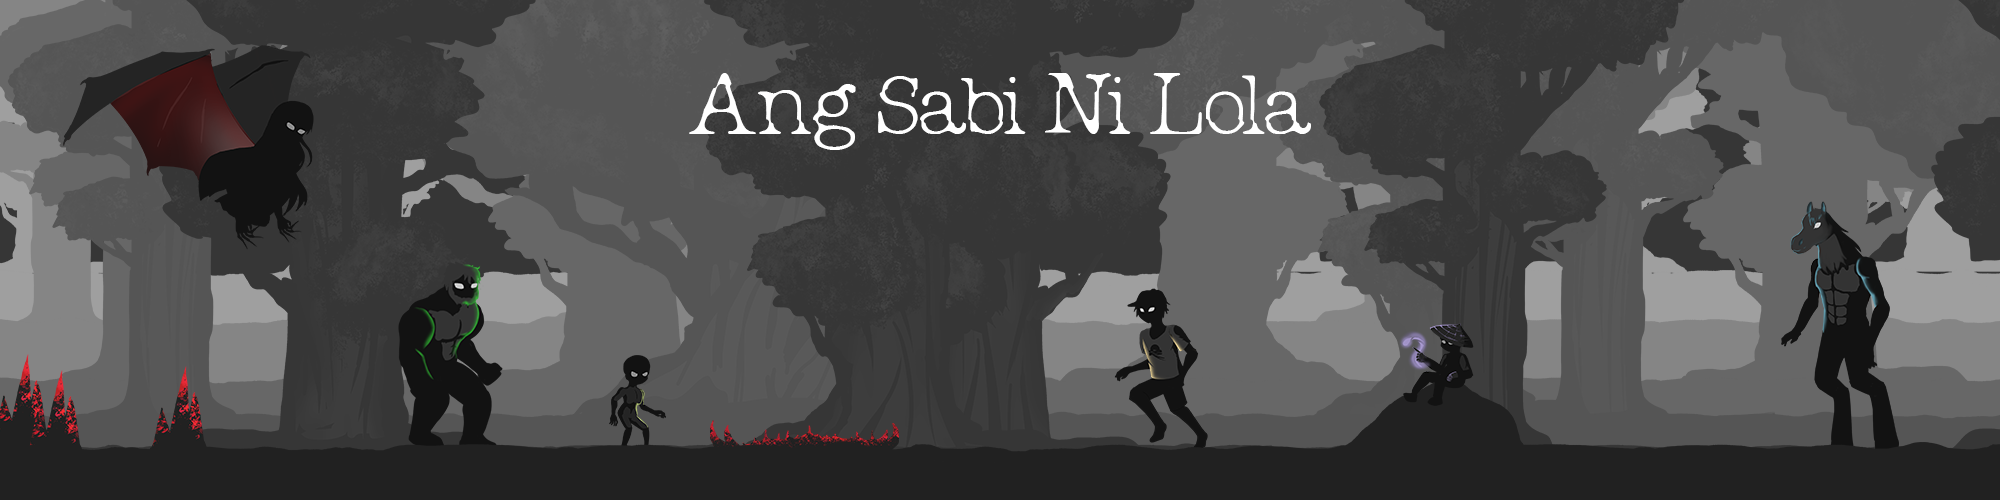 Ang Sabi Ni Lola